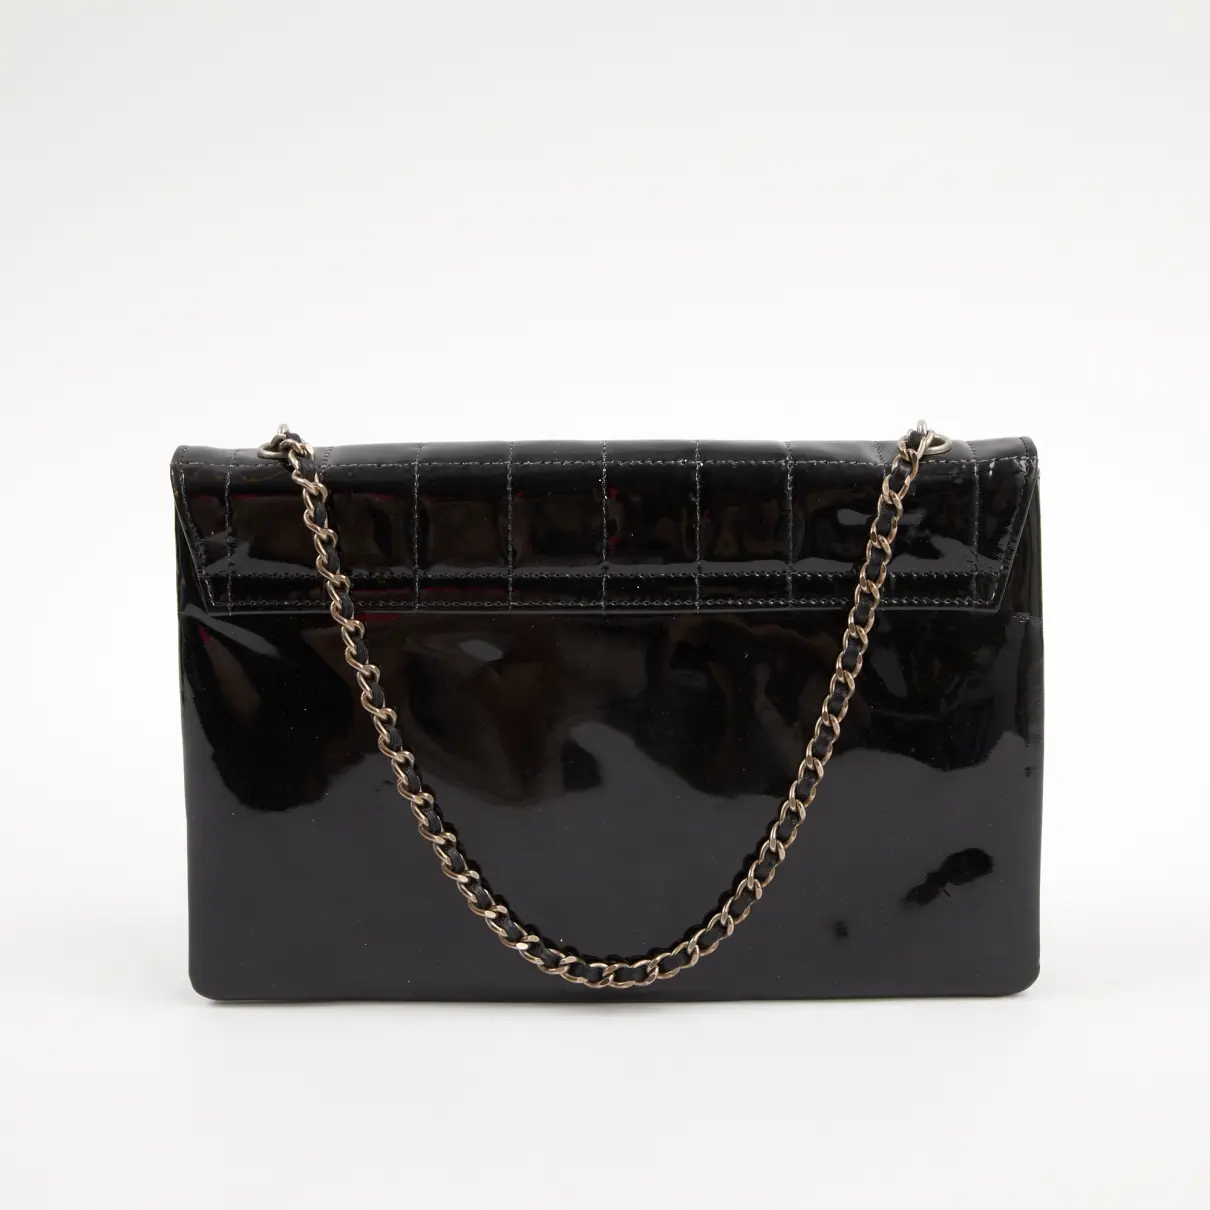 Buy Chanel Patent leather handbag online - Vintage